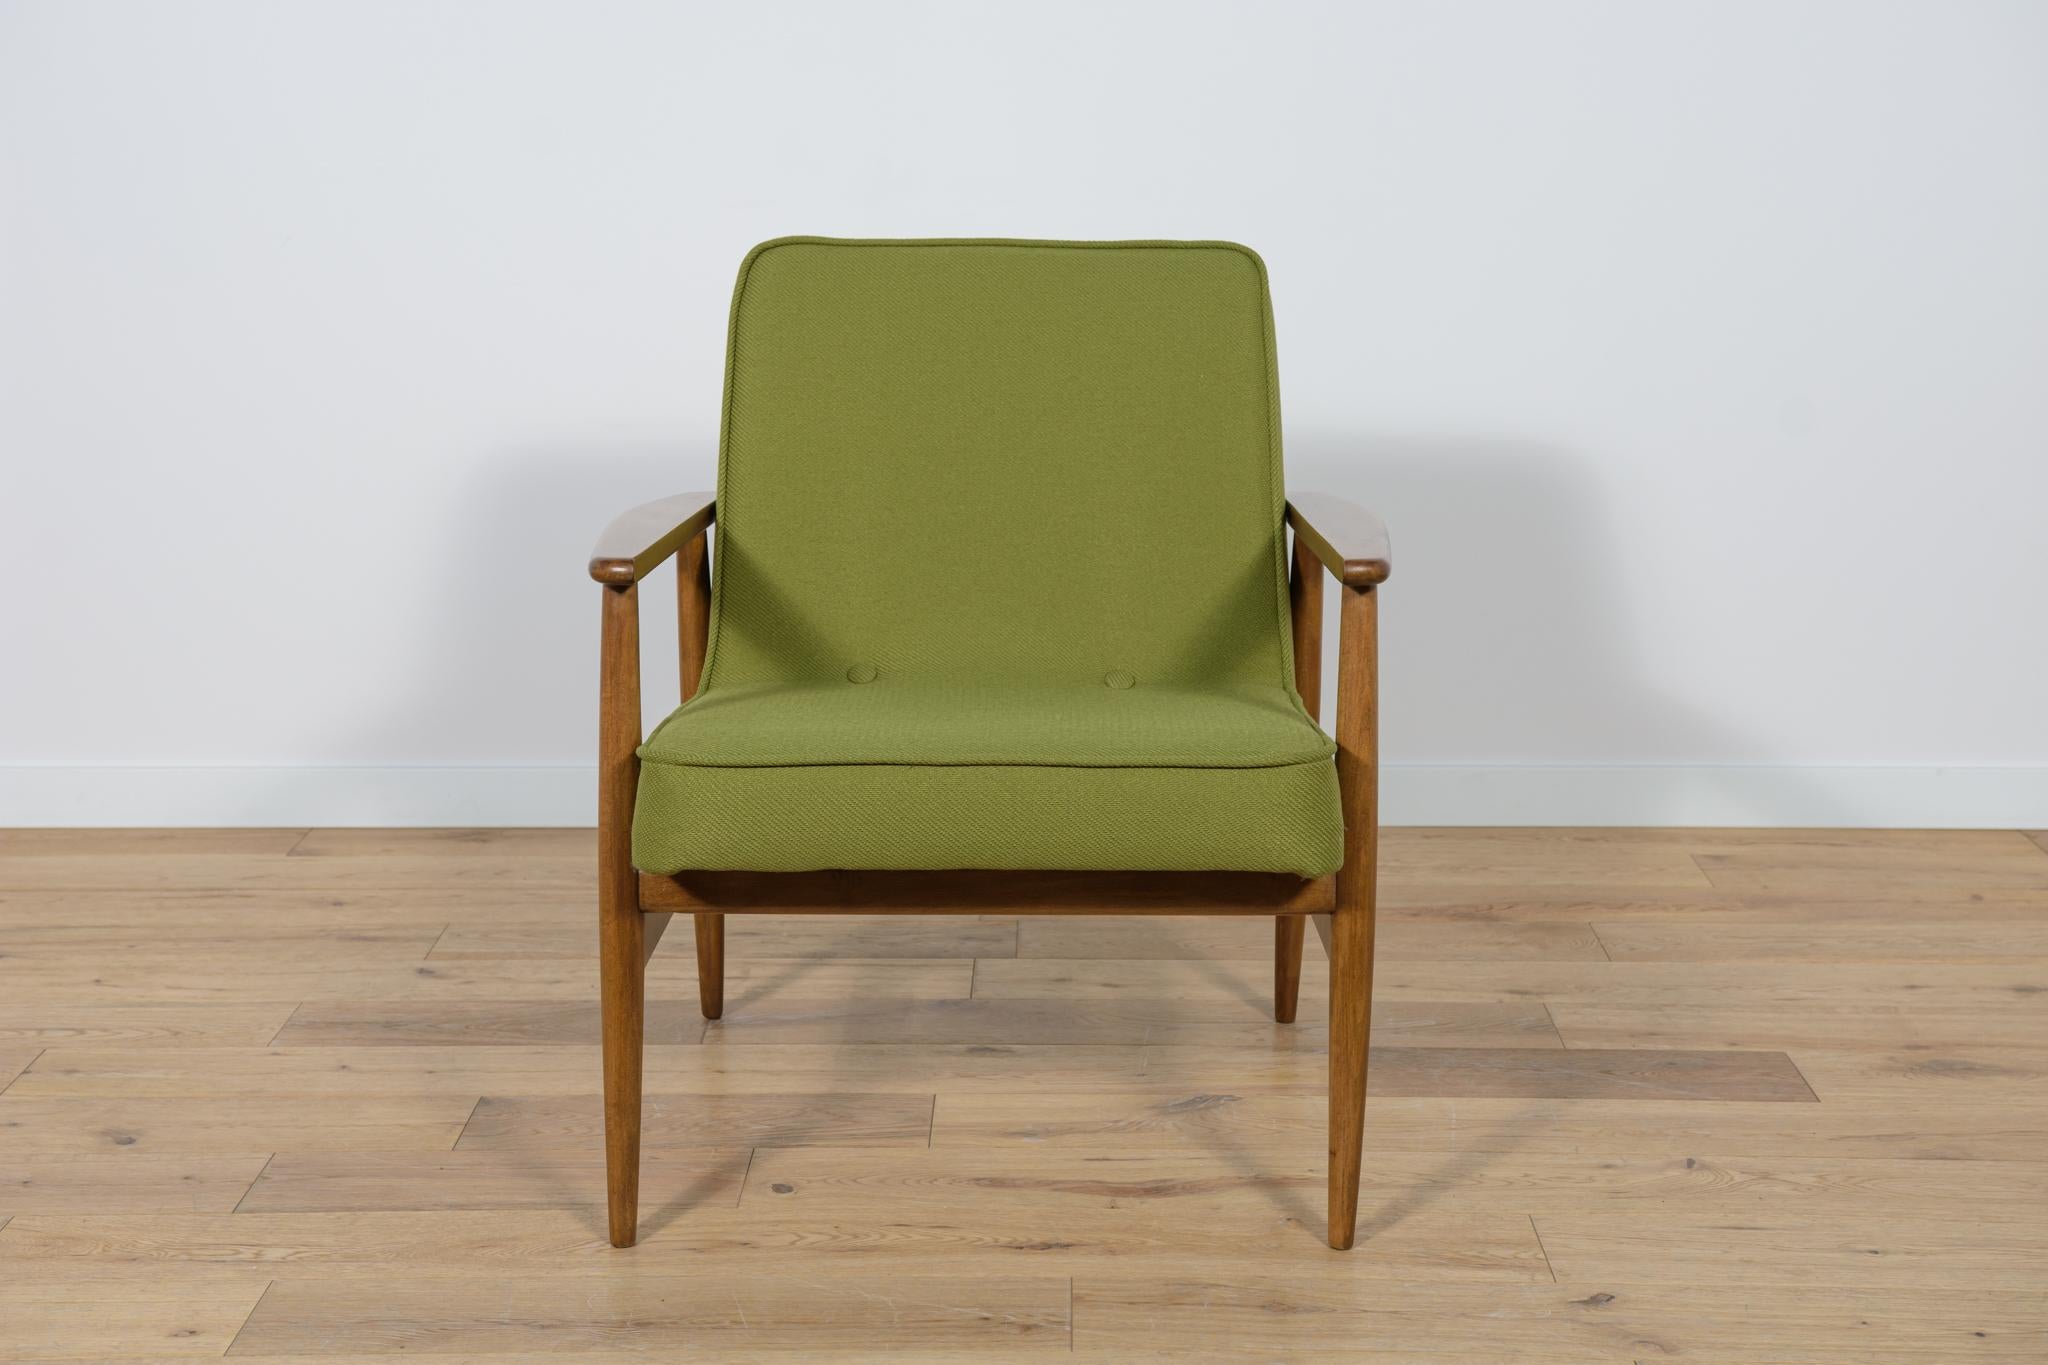 Sessel Typ 300-192  entworfen von Juliusz Kędziorek für Gościcińska Furniture Factory  in Polen in den frühen 1970er Jahren.
Der Sessel wurde professionell geschreinert und gepolstert. Das Buchenholz wurde von der alten Oberfläche gereinigt, mit